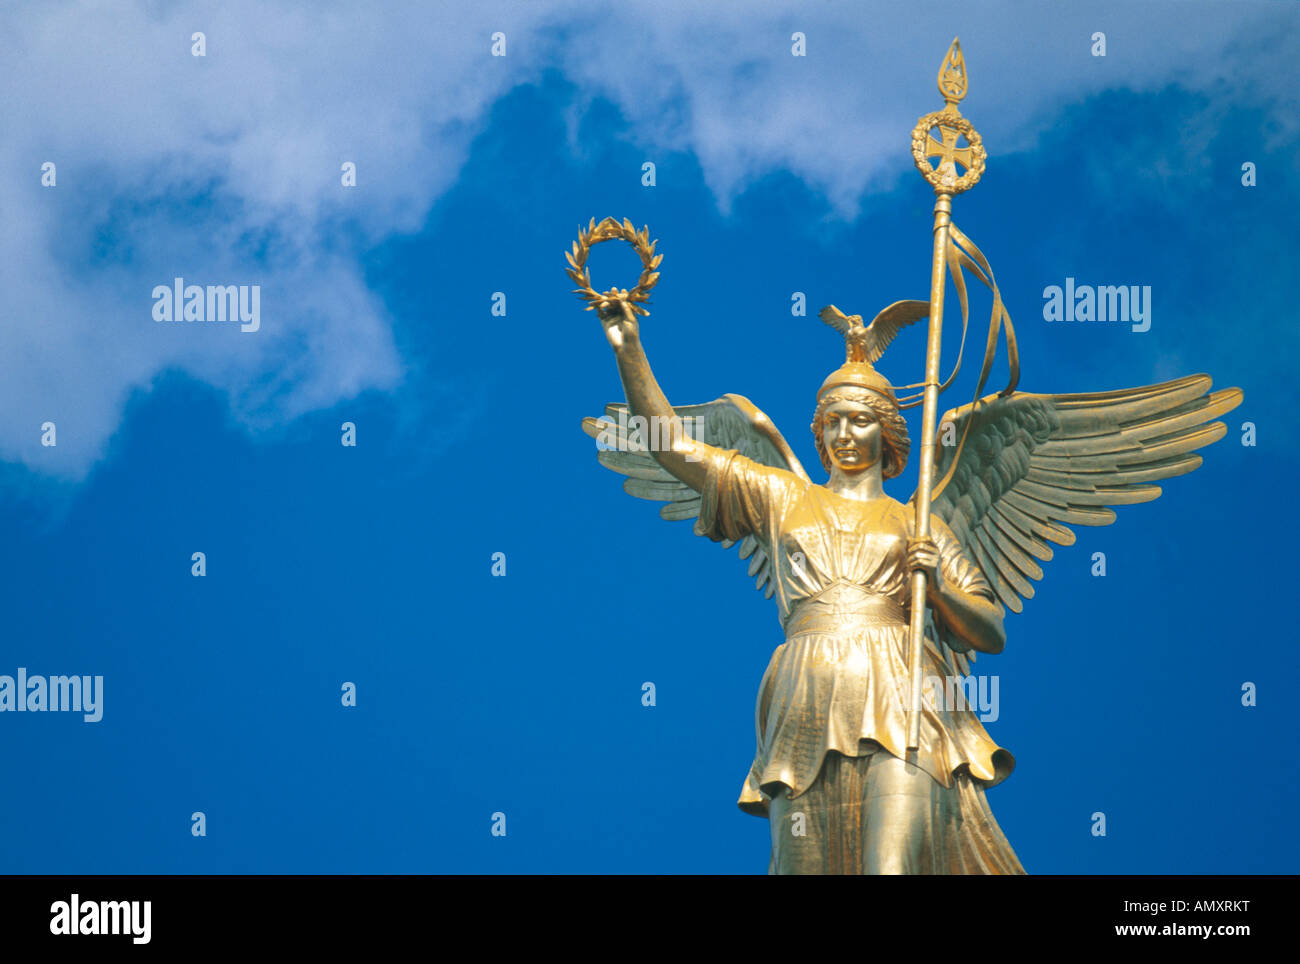 Statue von Nike, der Göttin des Sieges, Berlin, Deutschland Stockfotografie  - Alamy